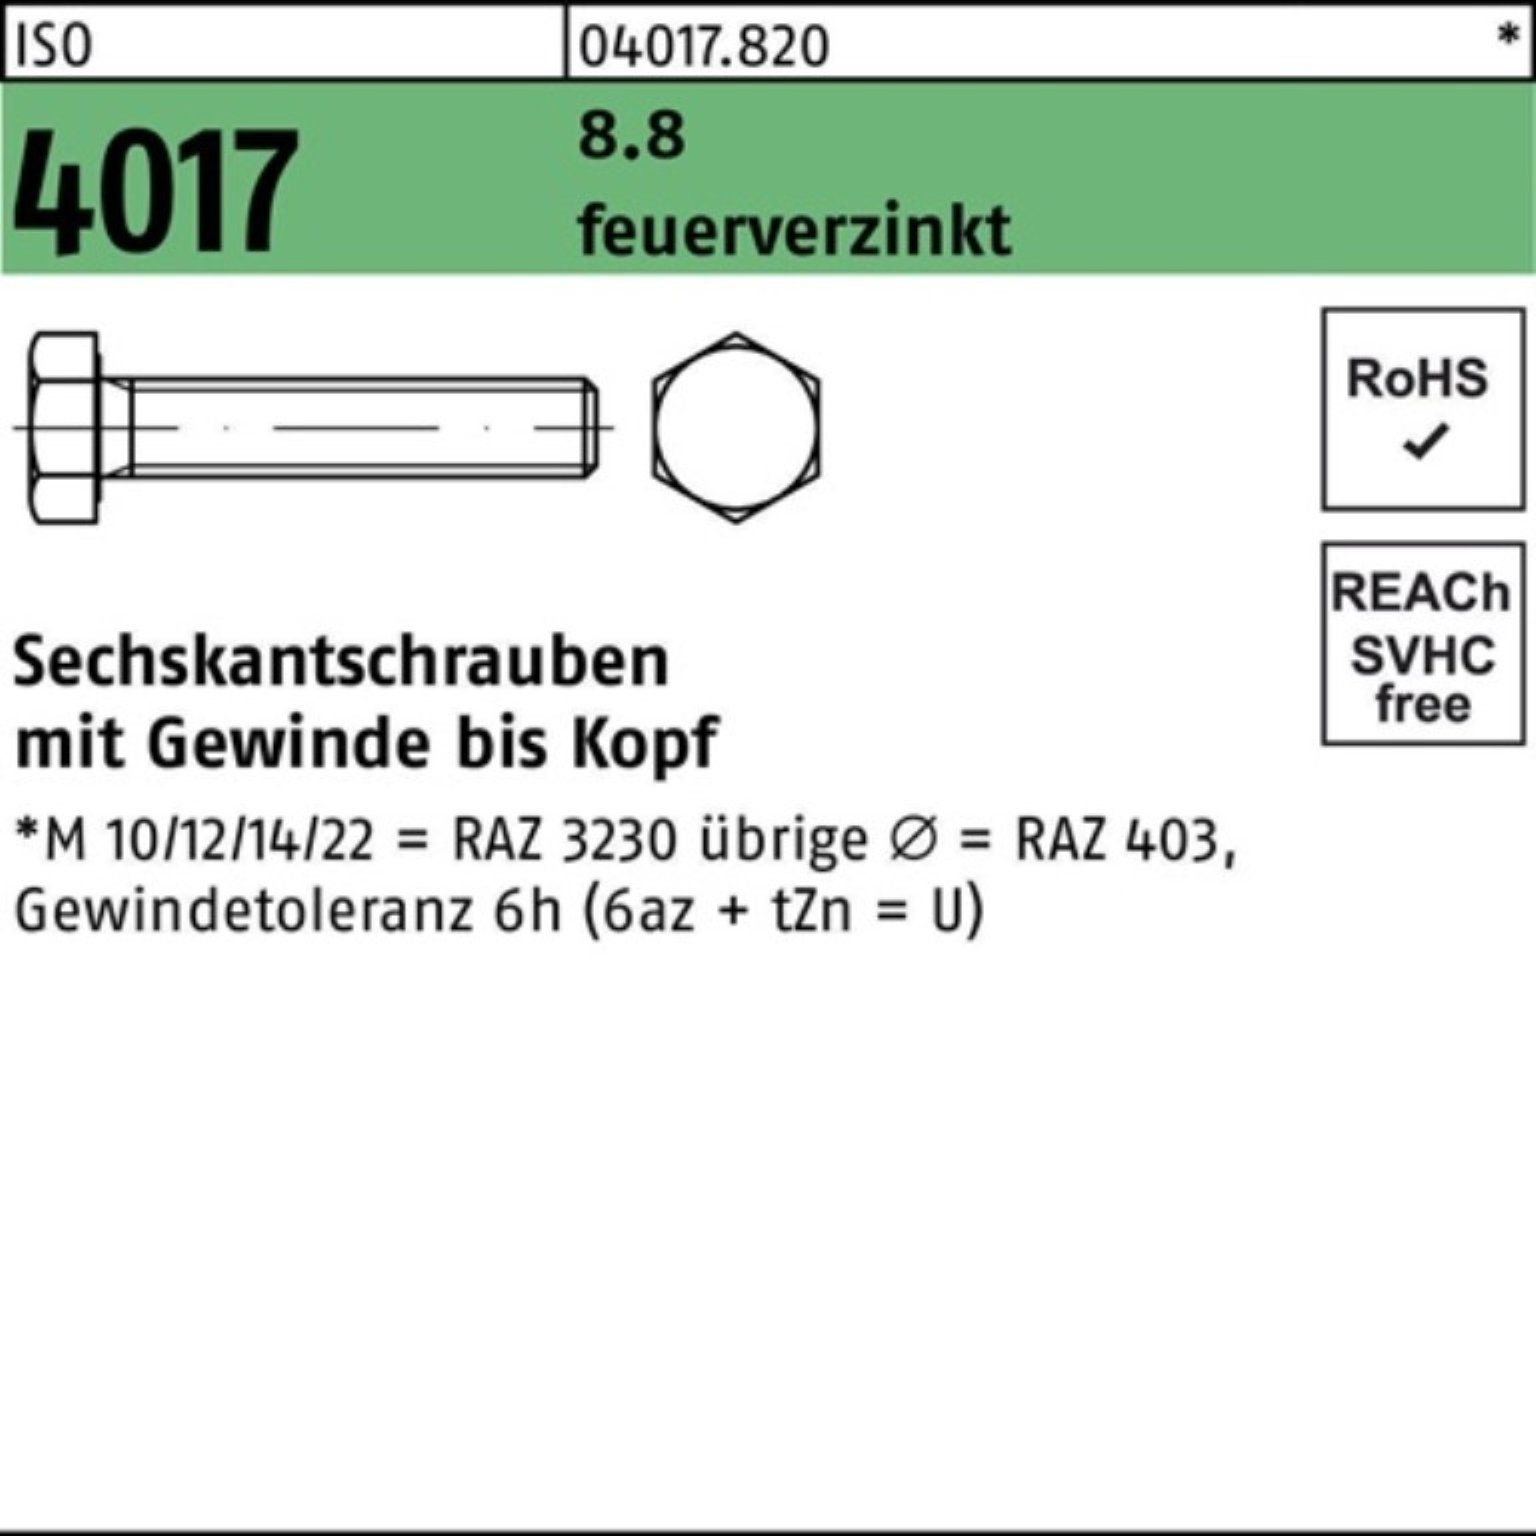 Bufab Sechskantschraube 100er Pack Sechskantschraube ISO 4017 VG M12x 90 8.8 feuerverz. 50 St